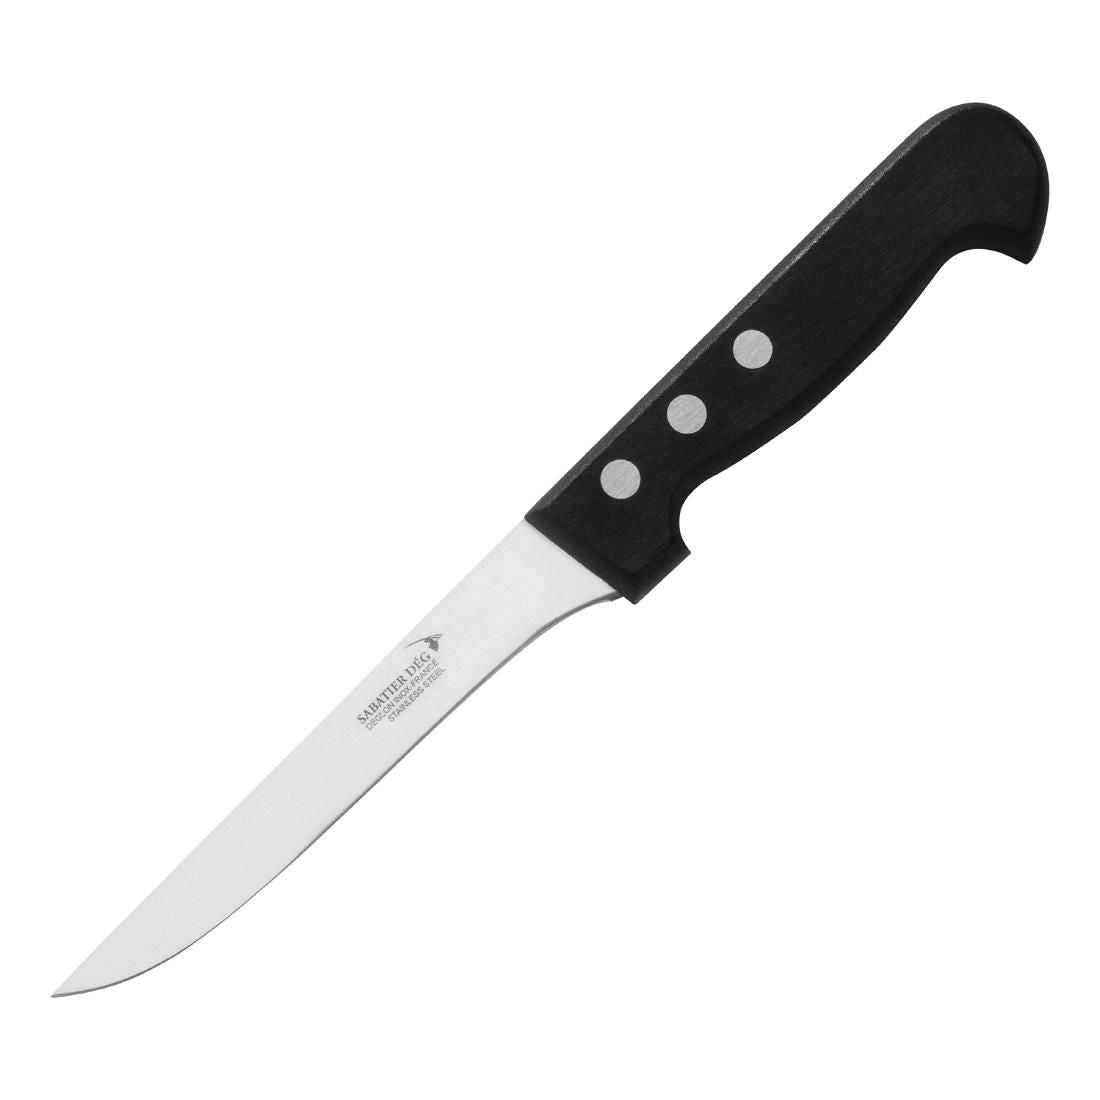 Deglon Sabatier Rigid Boning Knife 15cm JD Catering Equipment Solutions Ltd